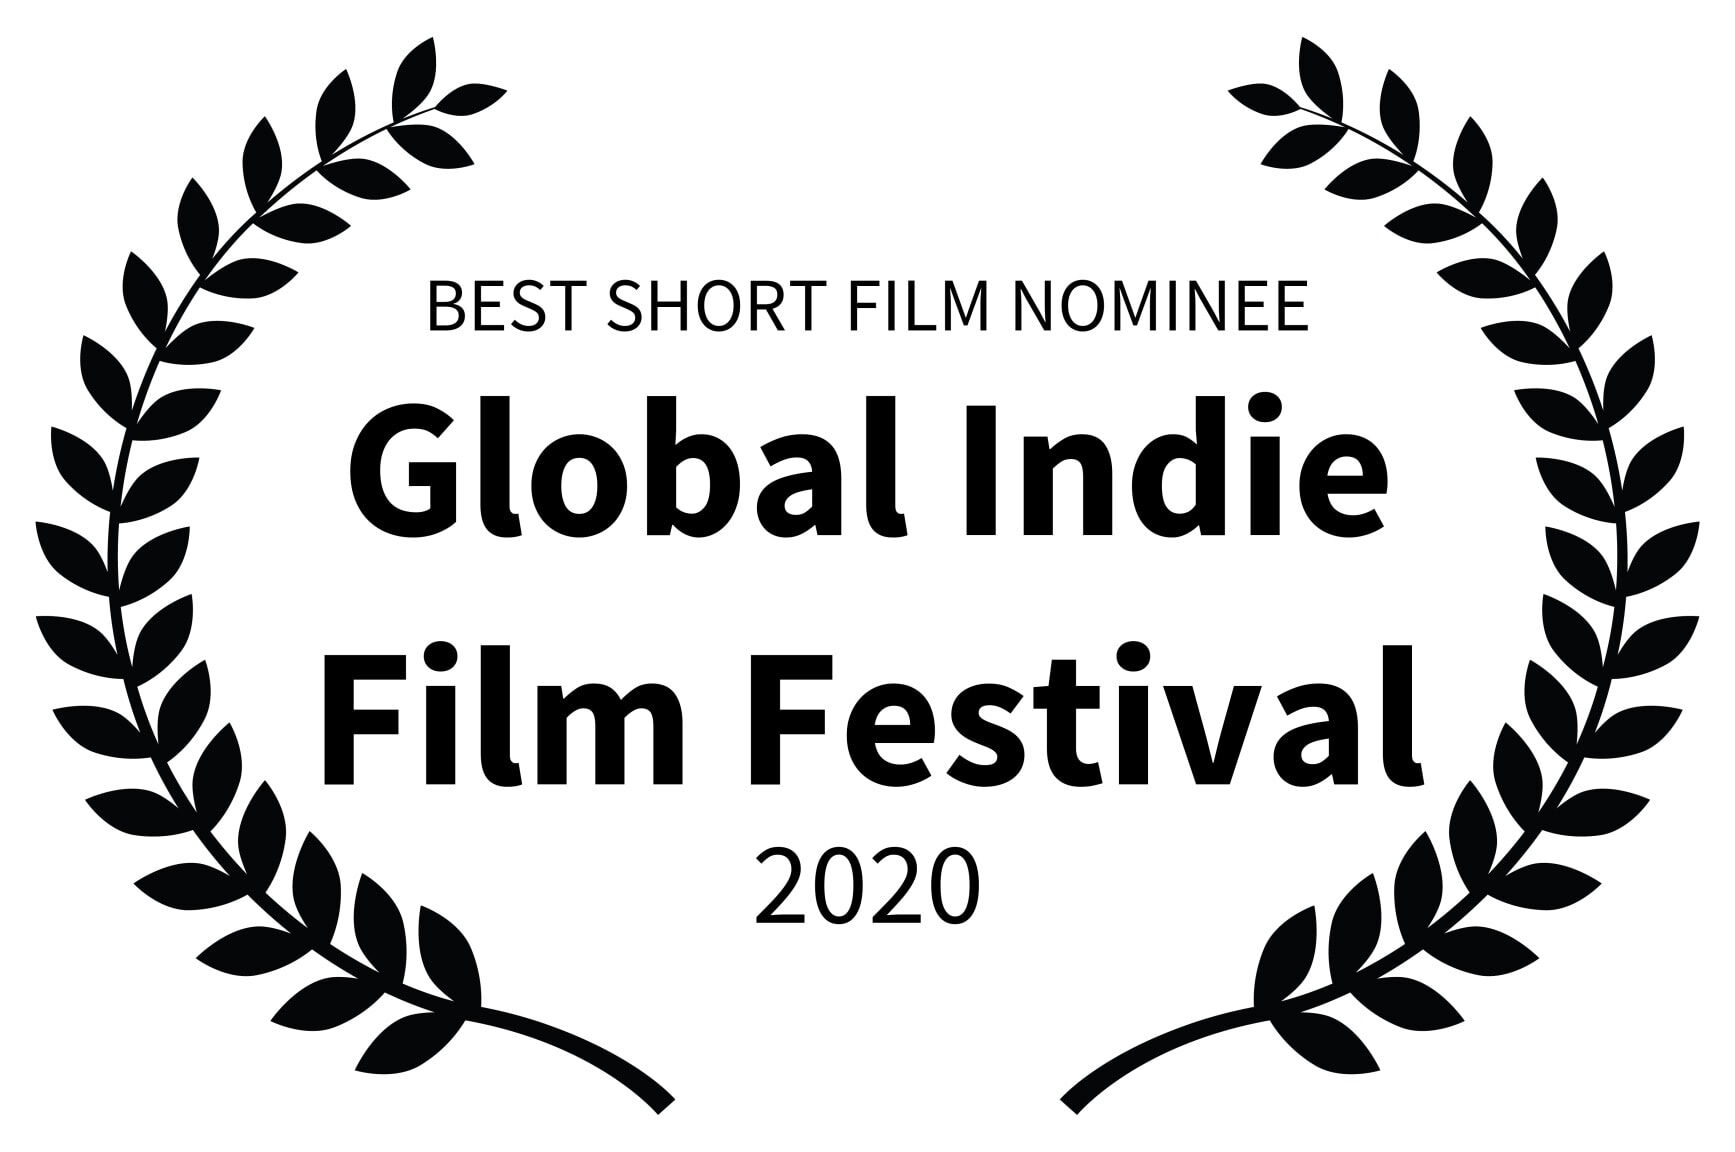 BEST SHORT FILM NOMINEE - Global Indie Film Festival - 2020